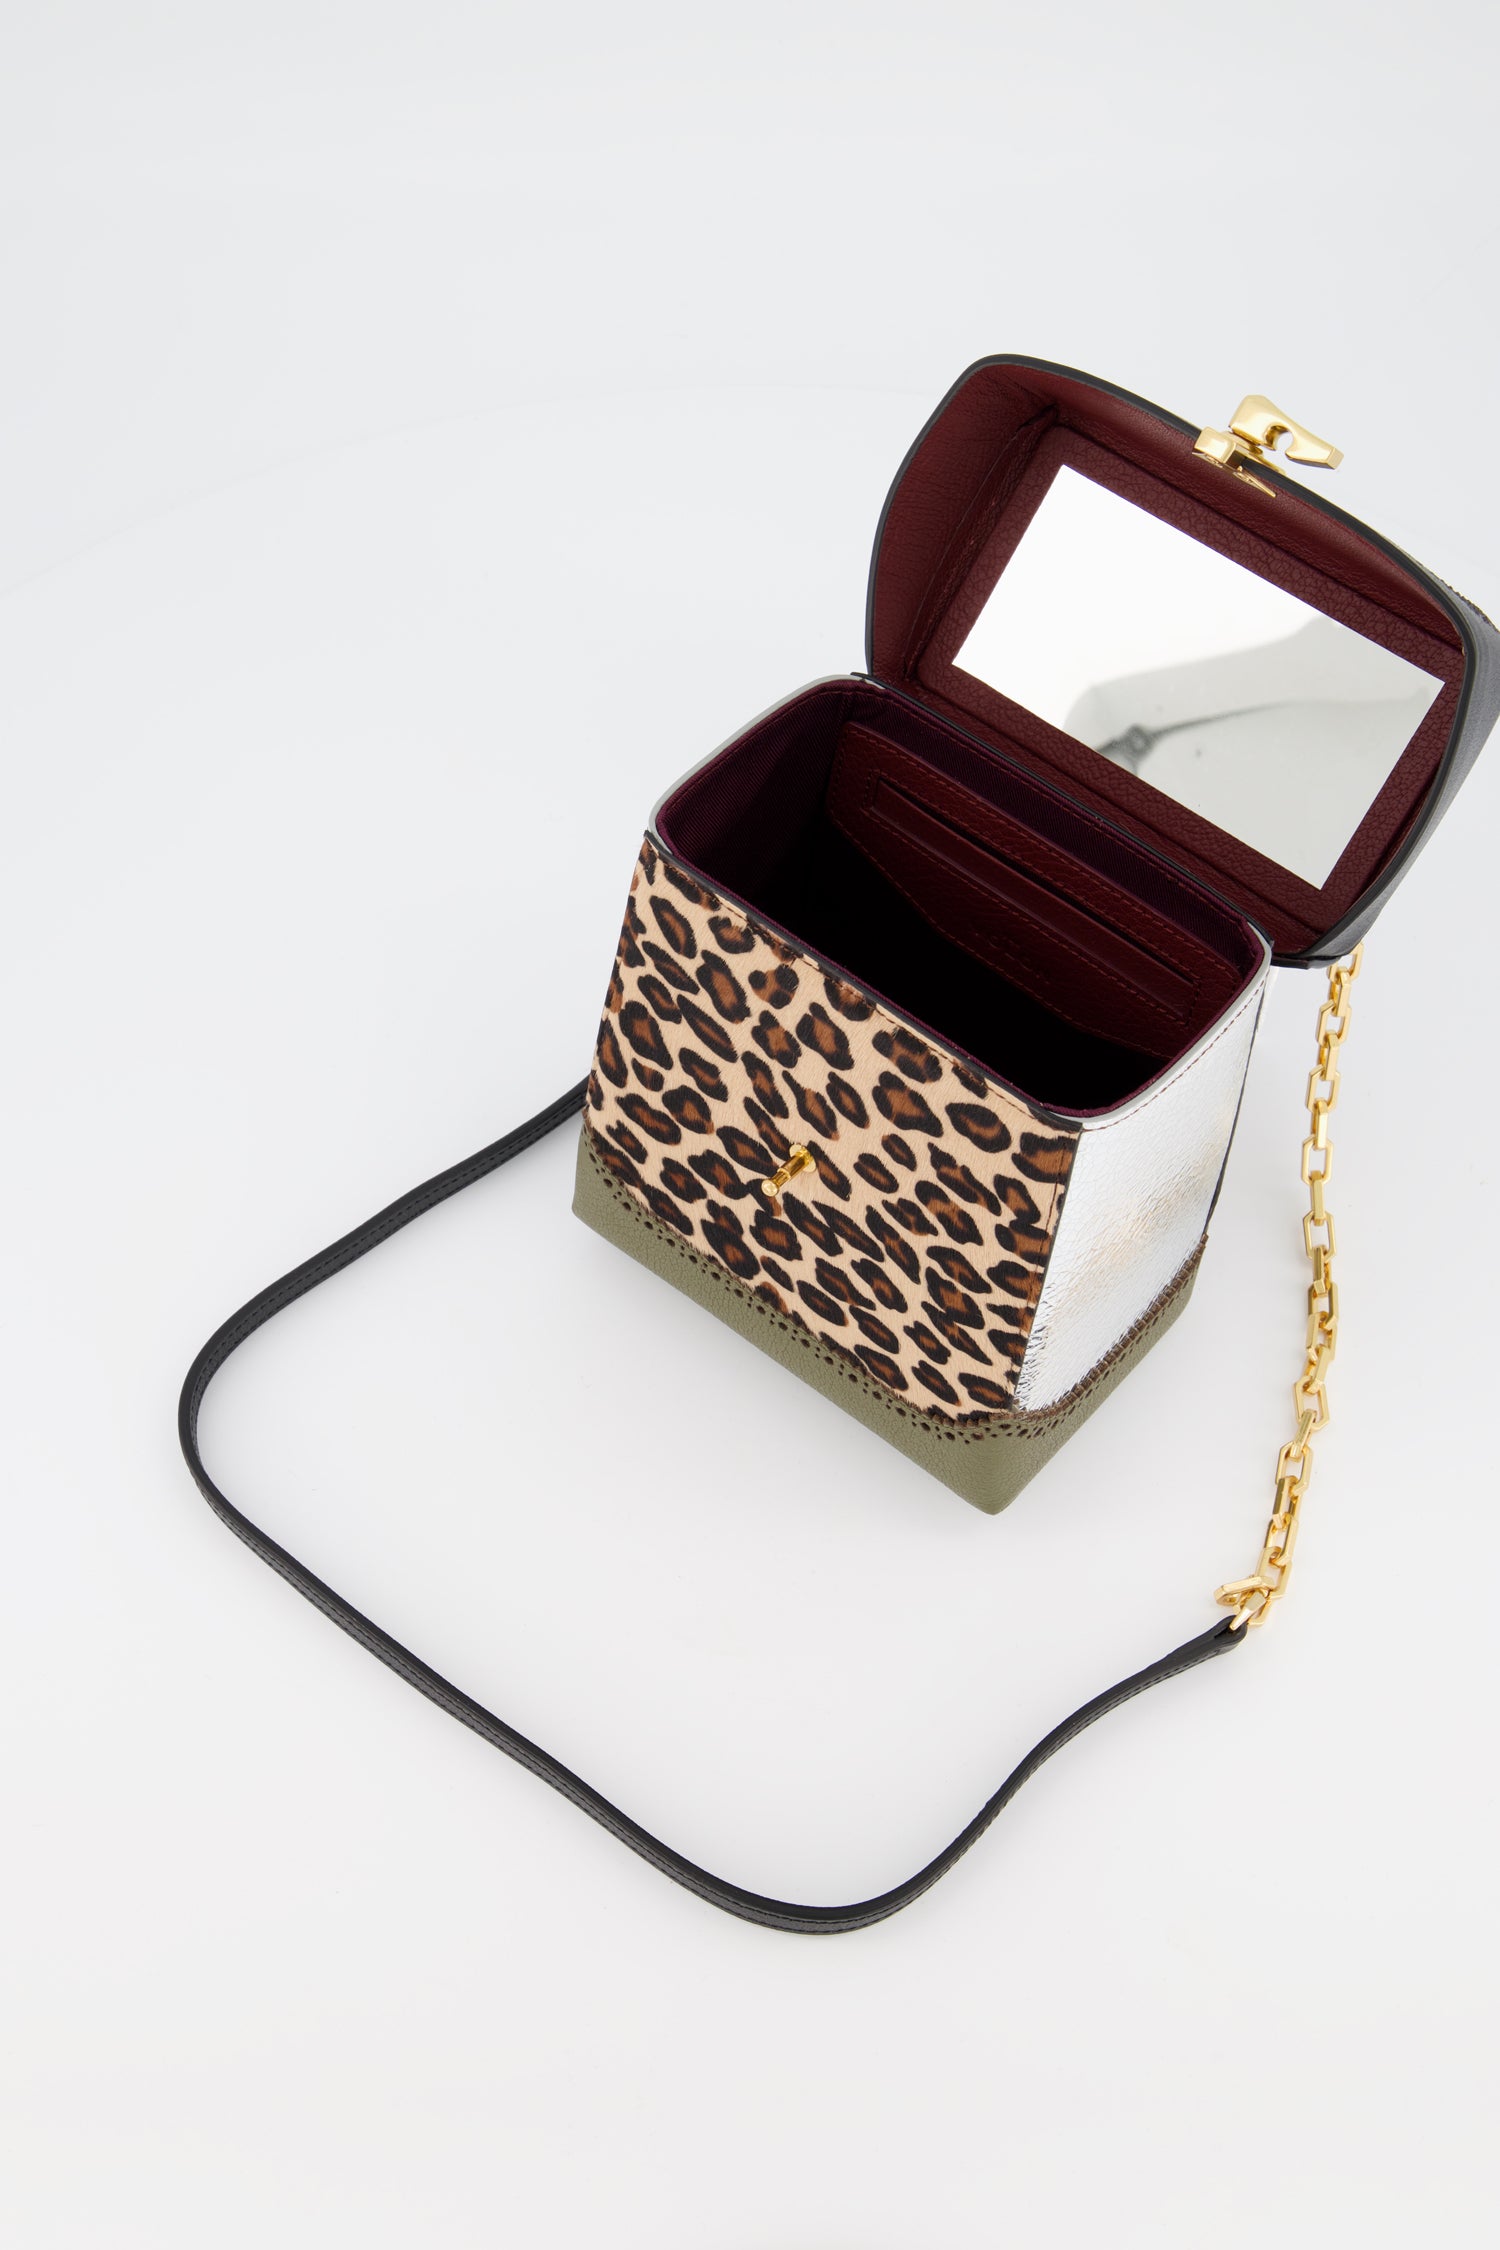 The Volon Leopard Great L. Box Alice Bag